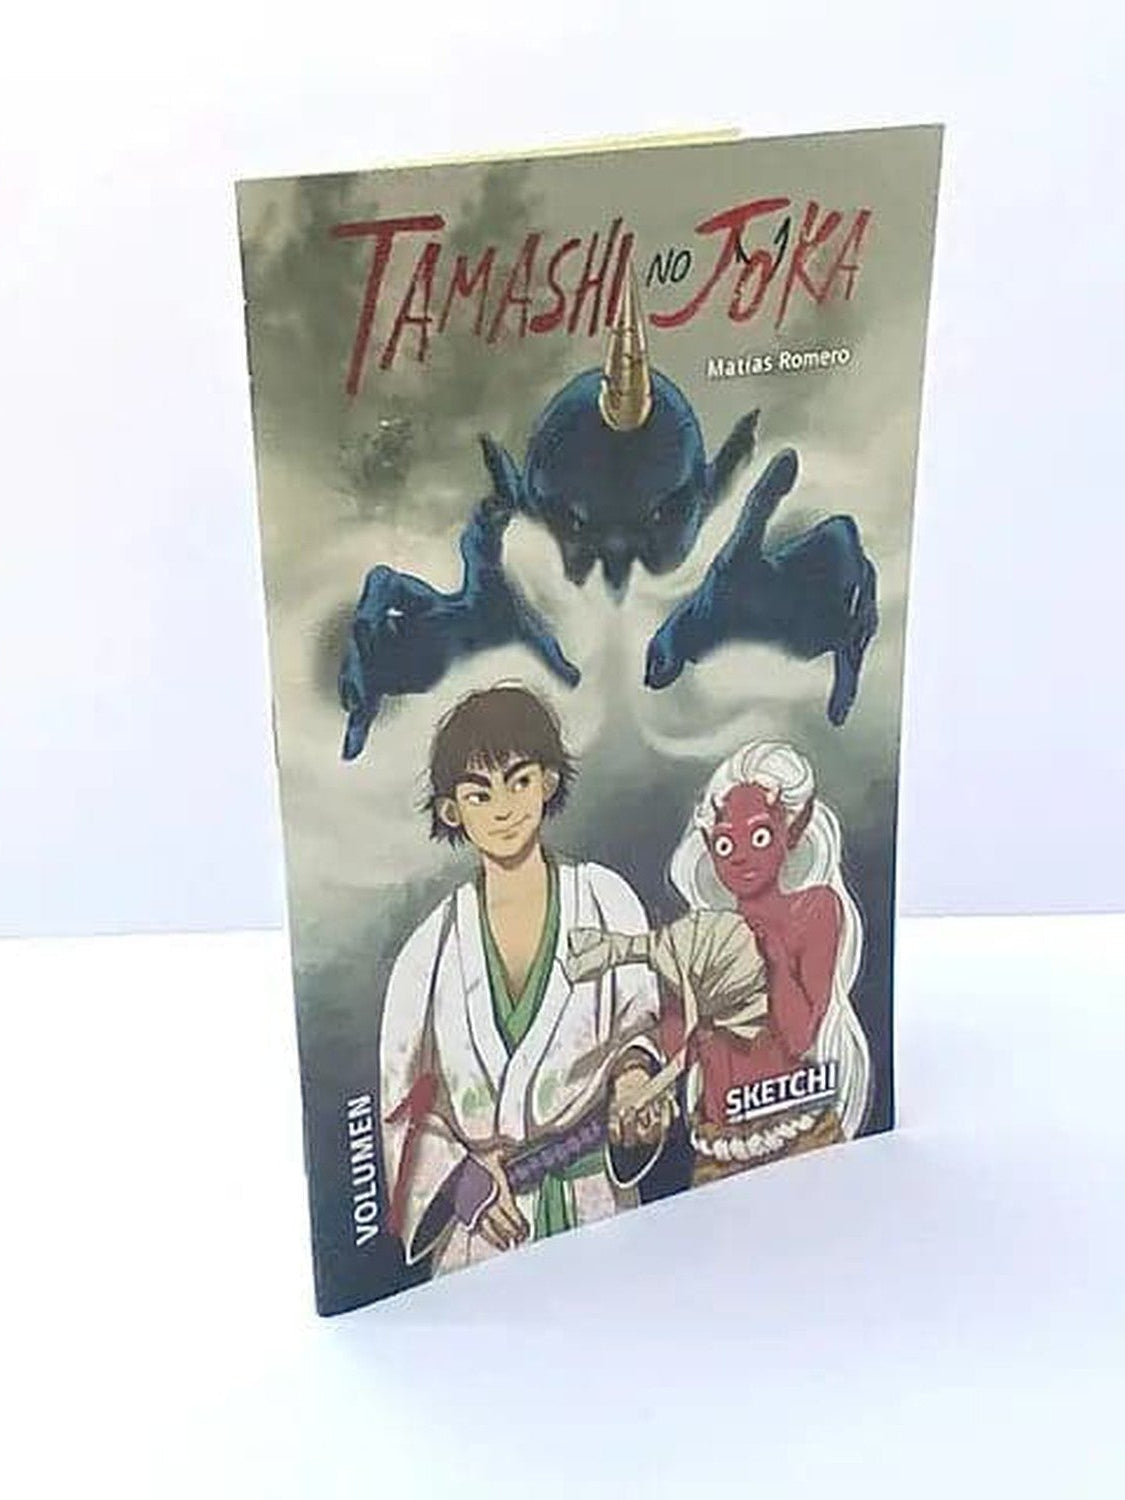 Tamashi no Joka - Volumen 1 Sketchi ENcuadrocomics